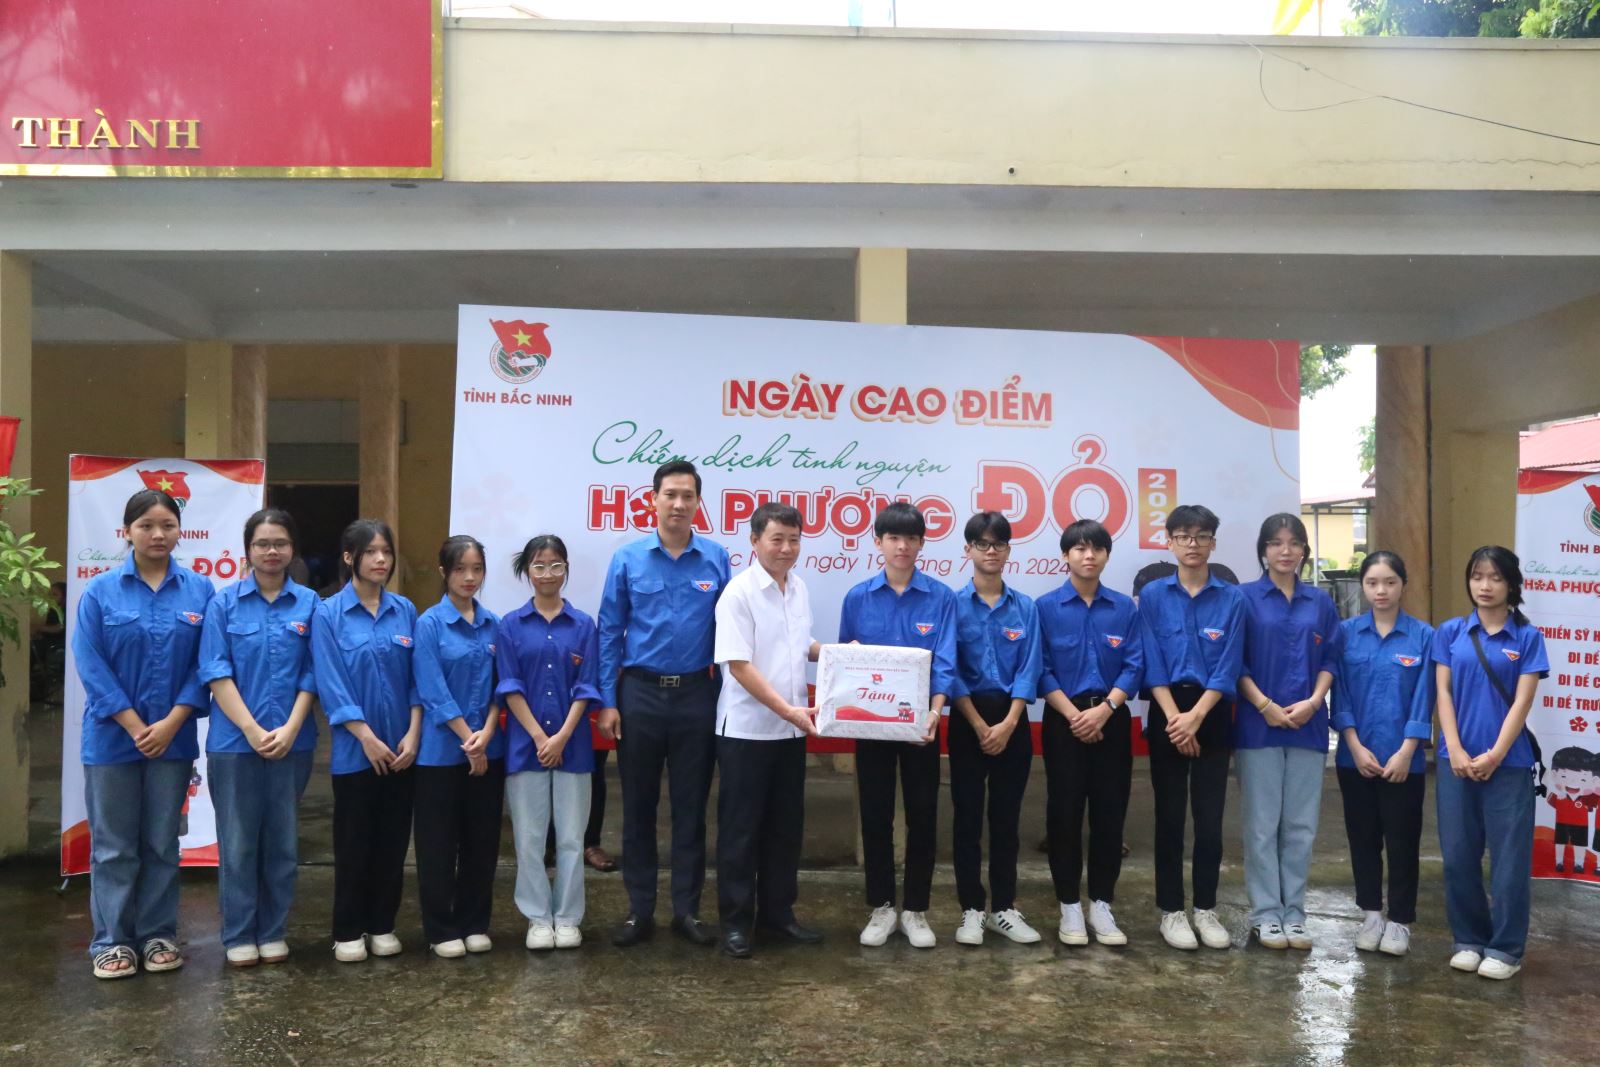 Ngày cao điểm chiến dịch tình nguyện "Hoa phượng đỏ" tỉnh Bắc Ninh năm 2024